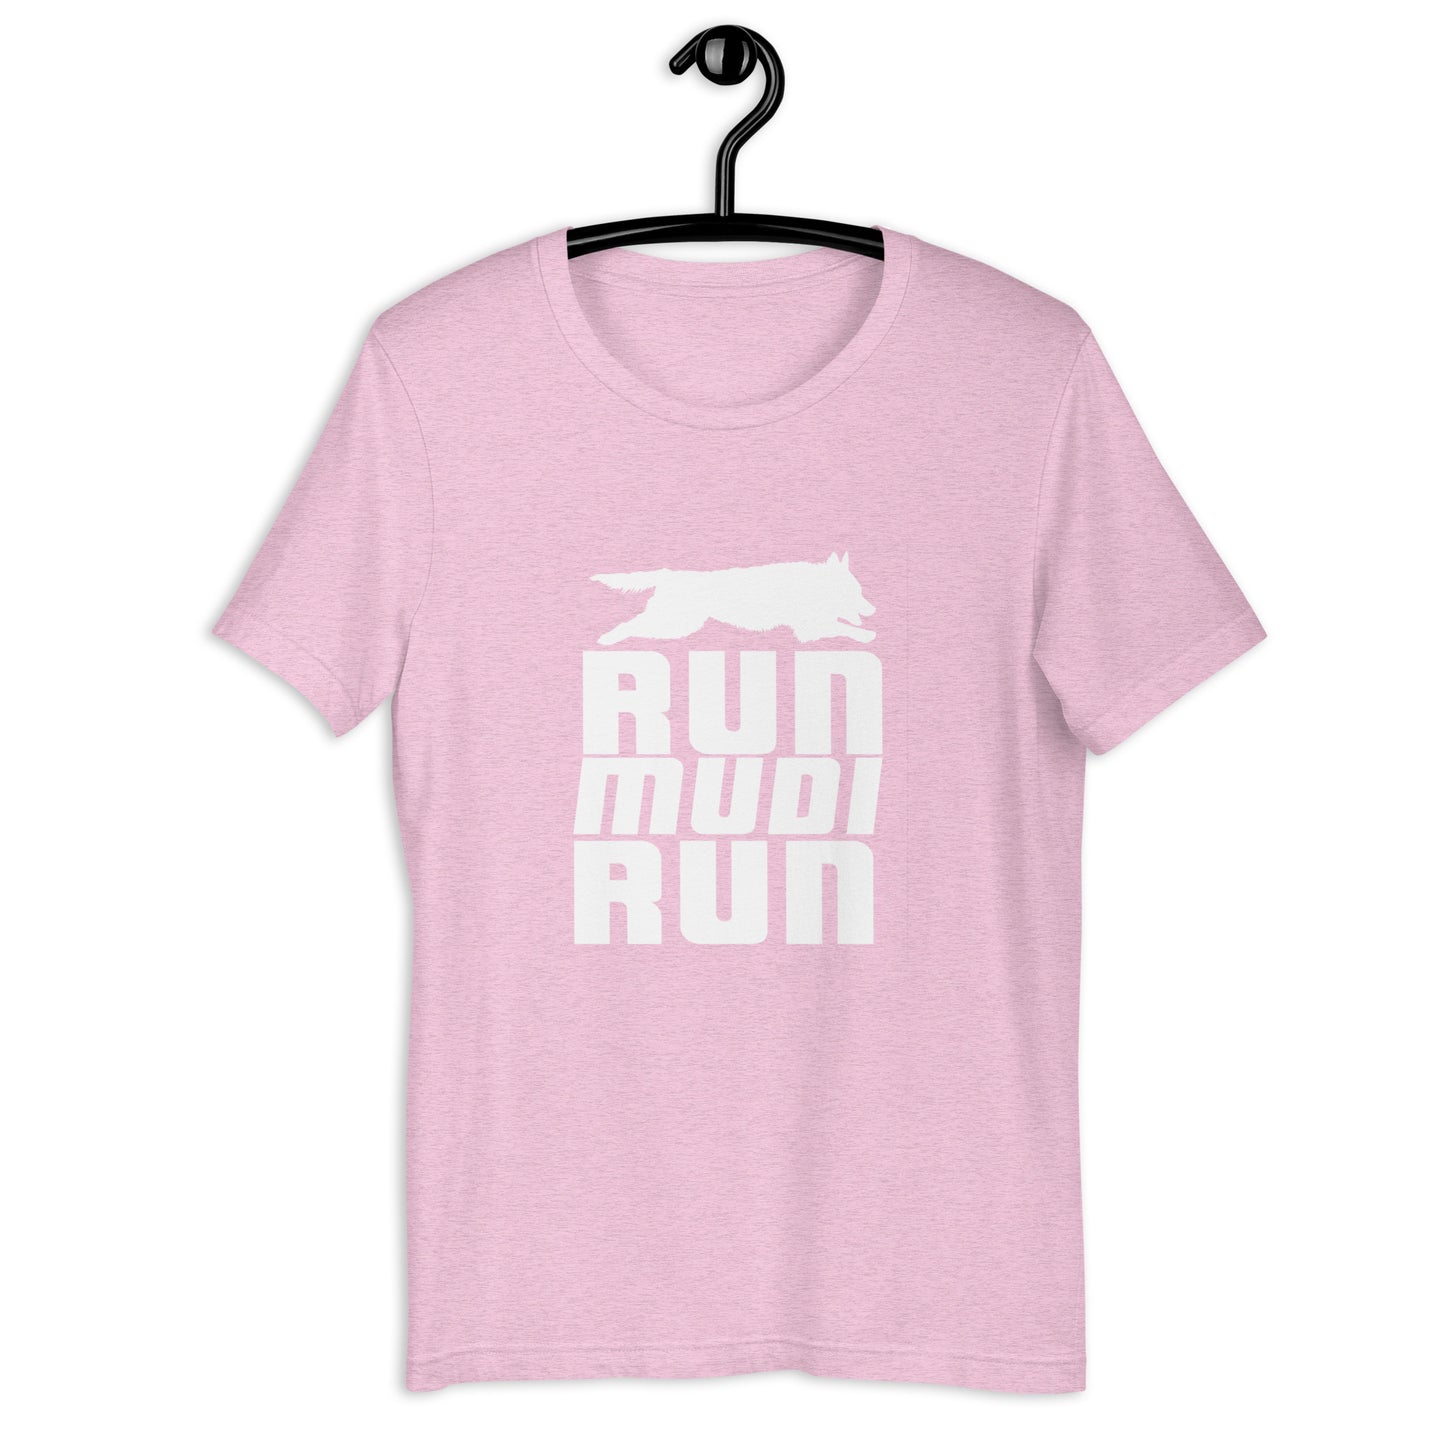 RUN MUDI RUN - Unisex t-shirt